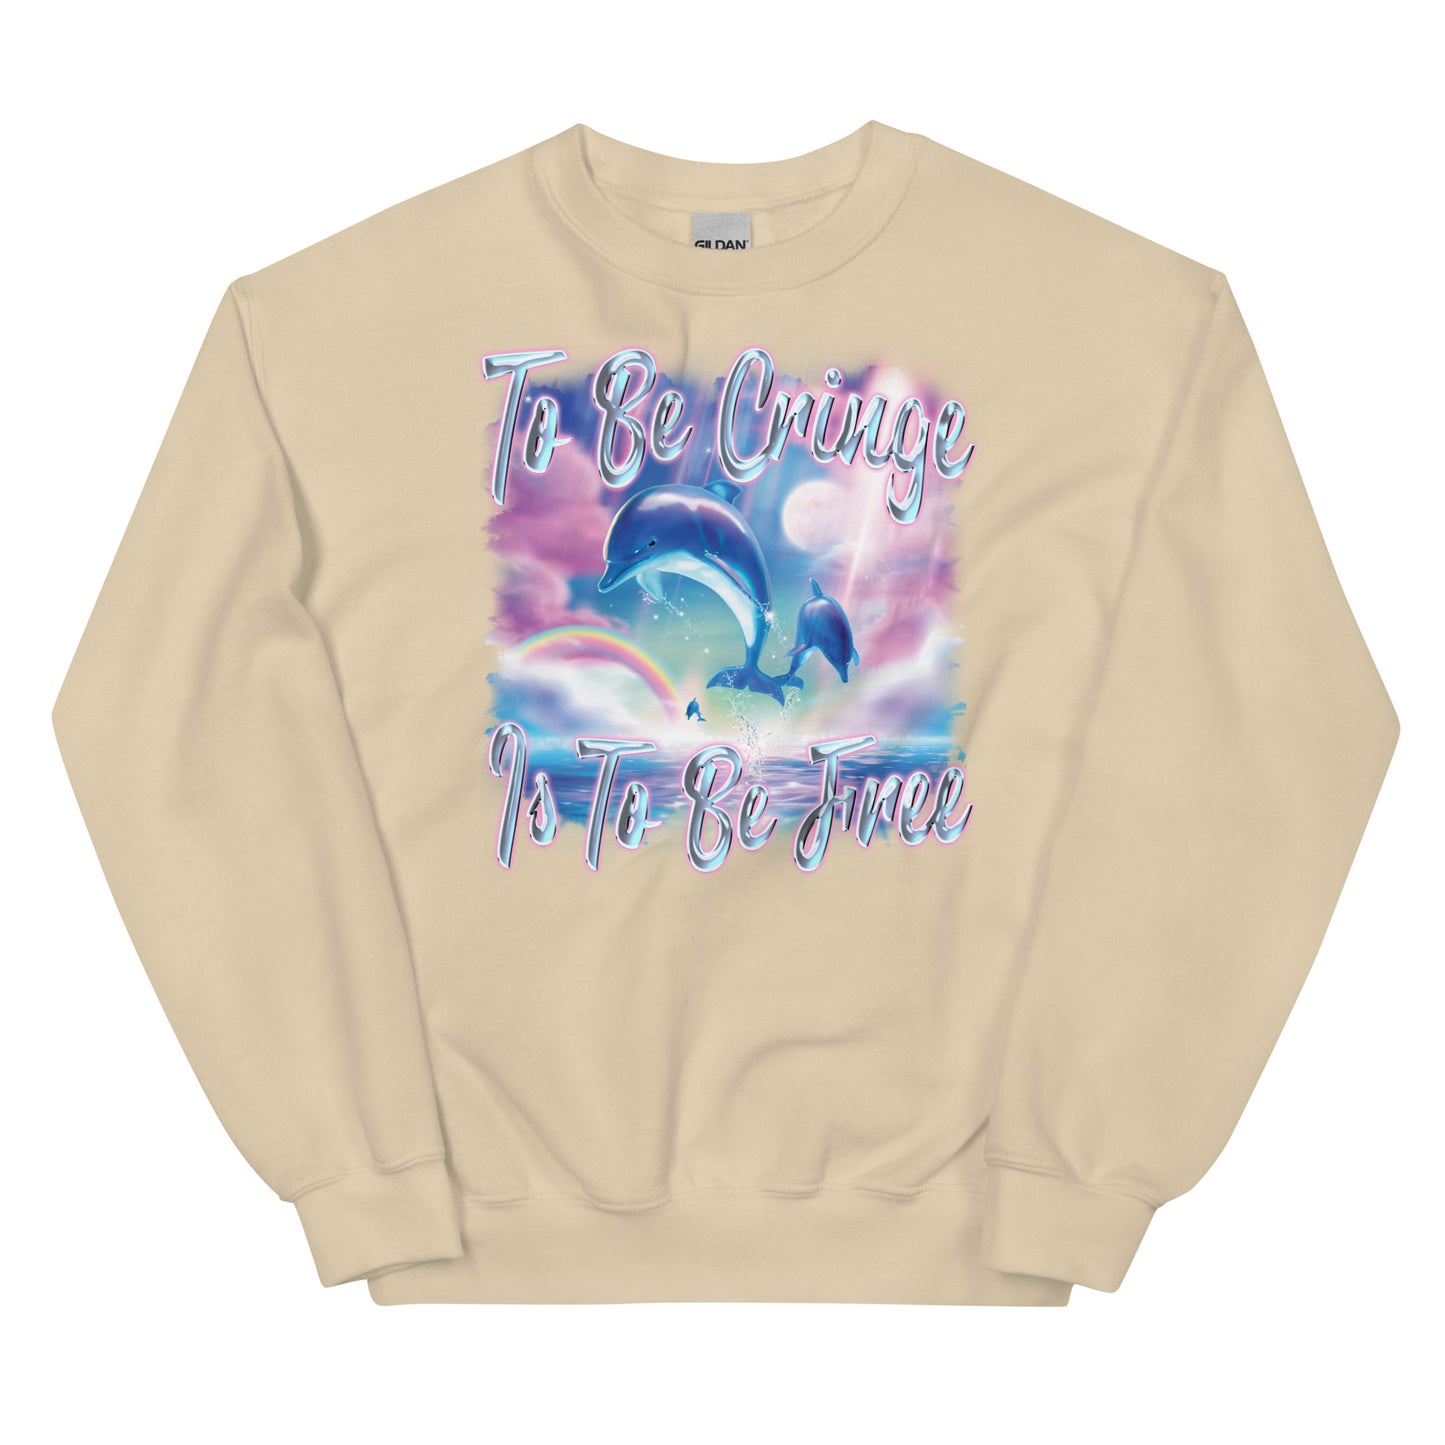 To Be Cringe (Dolphin) Unisex Sweatshirt